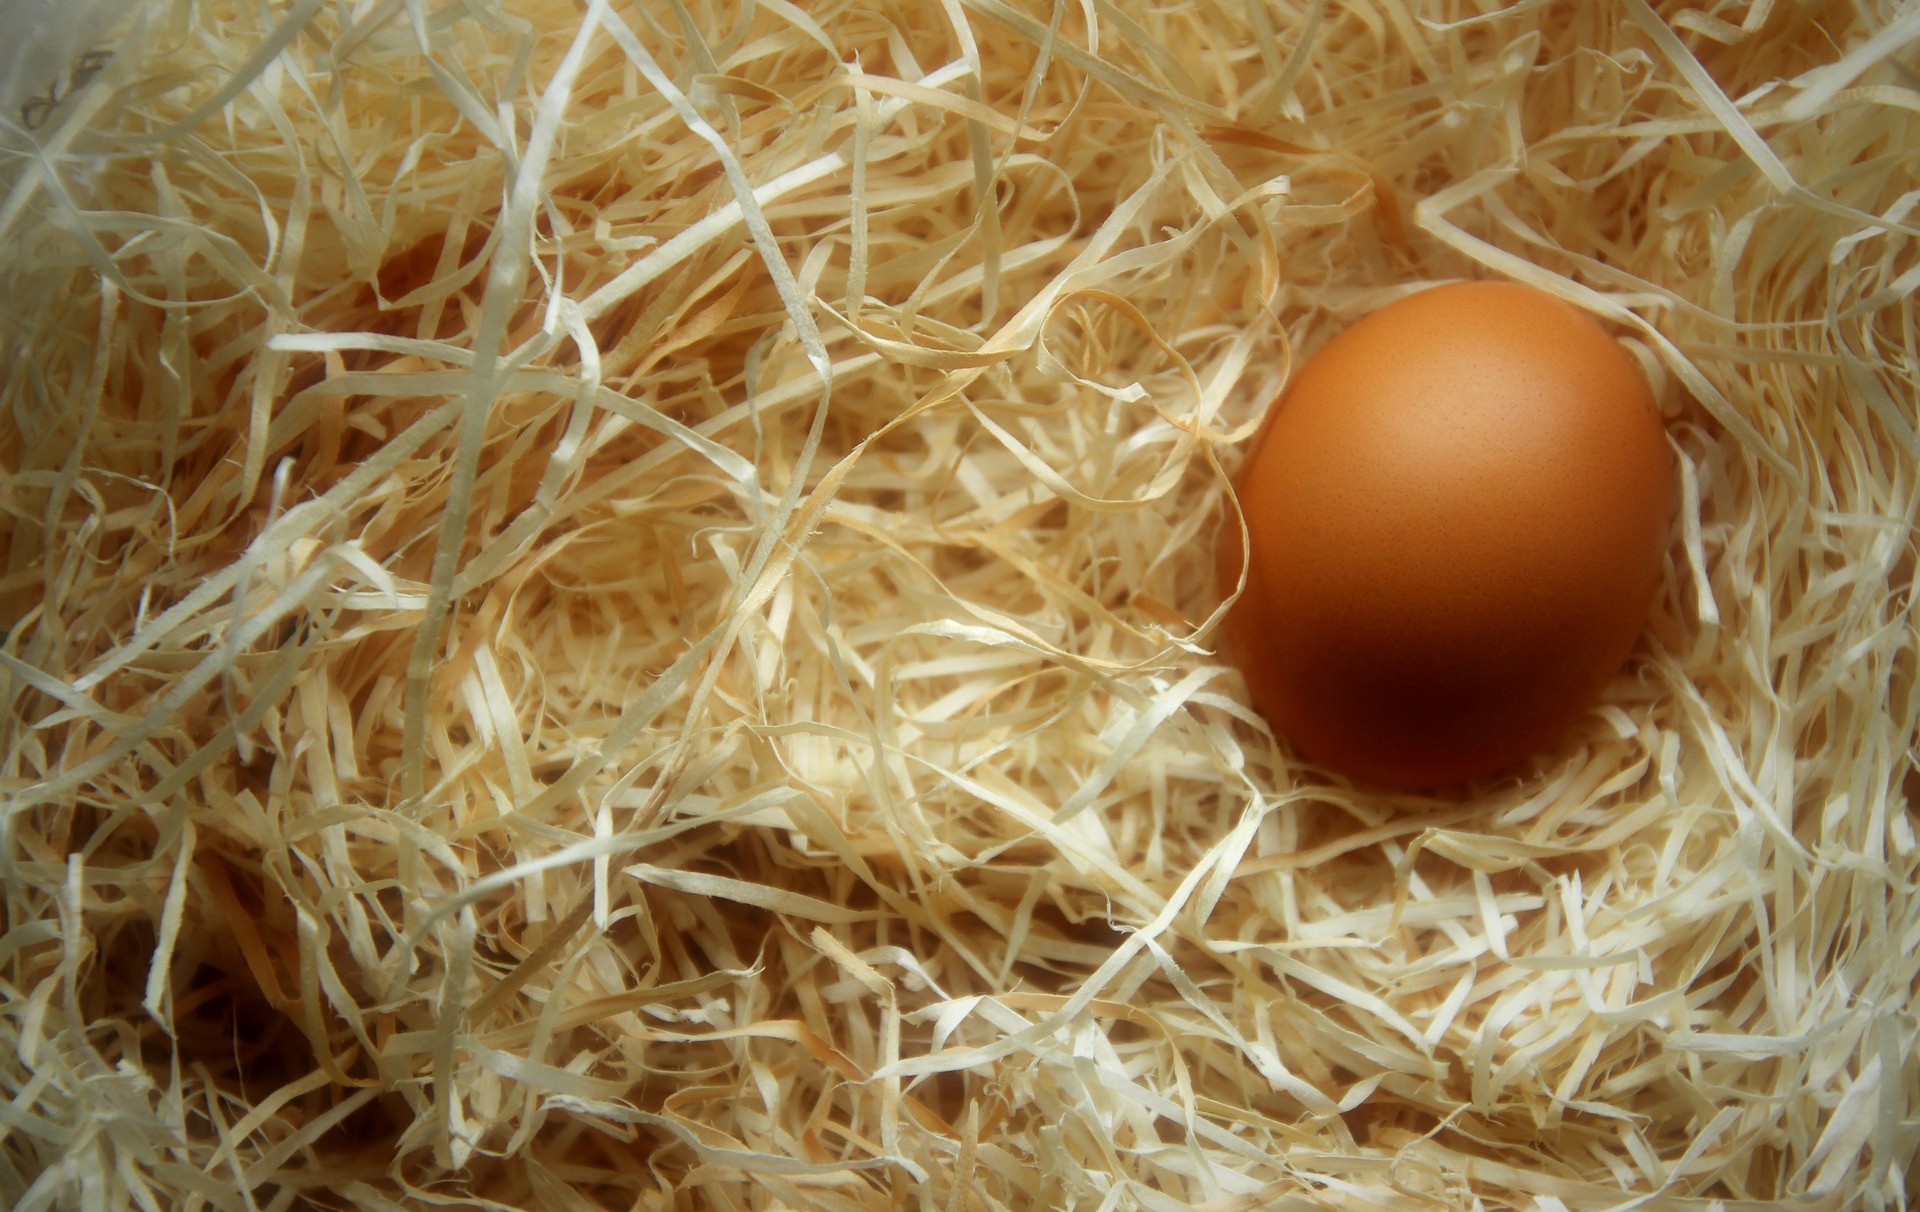 Foto: eine Ei